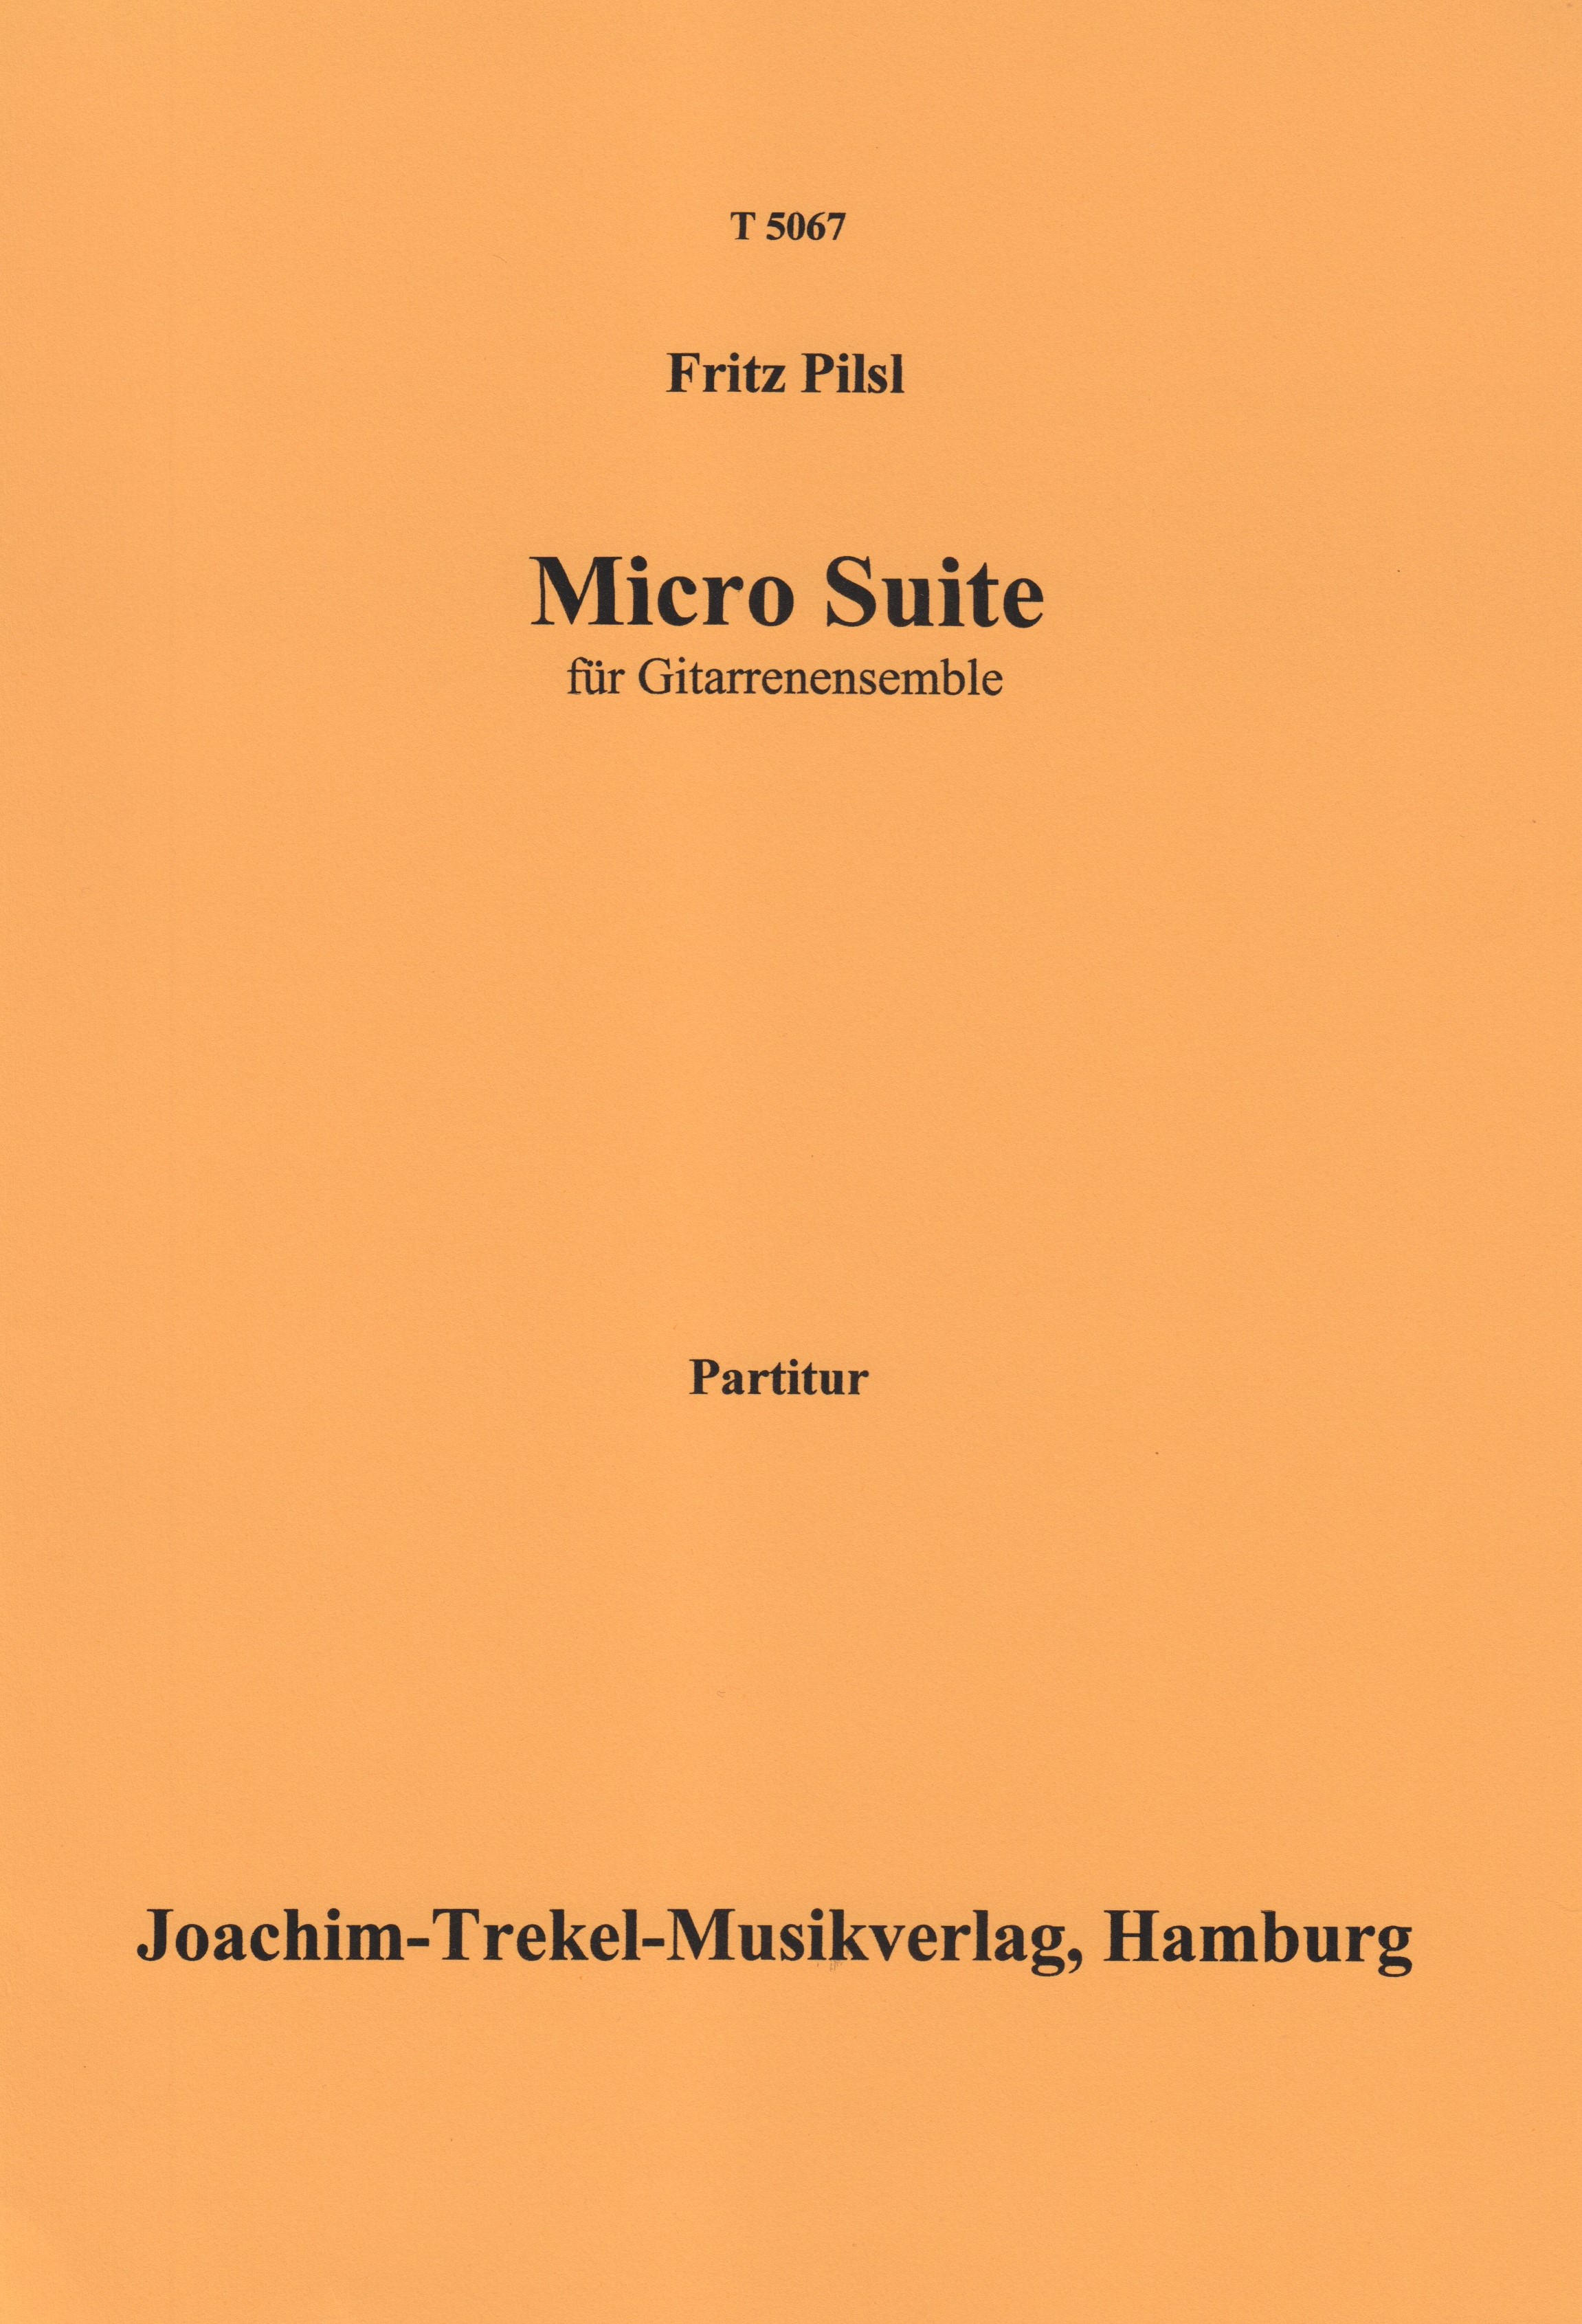 Micro Suite